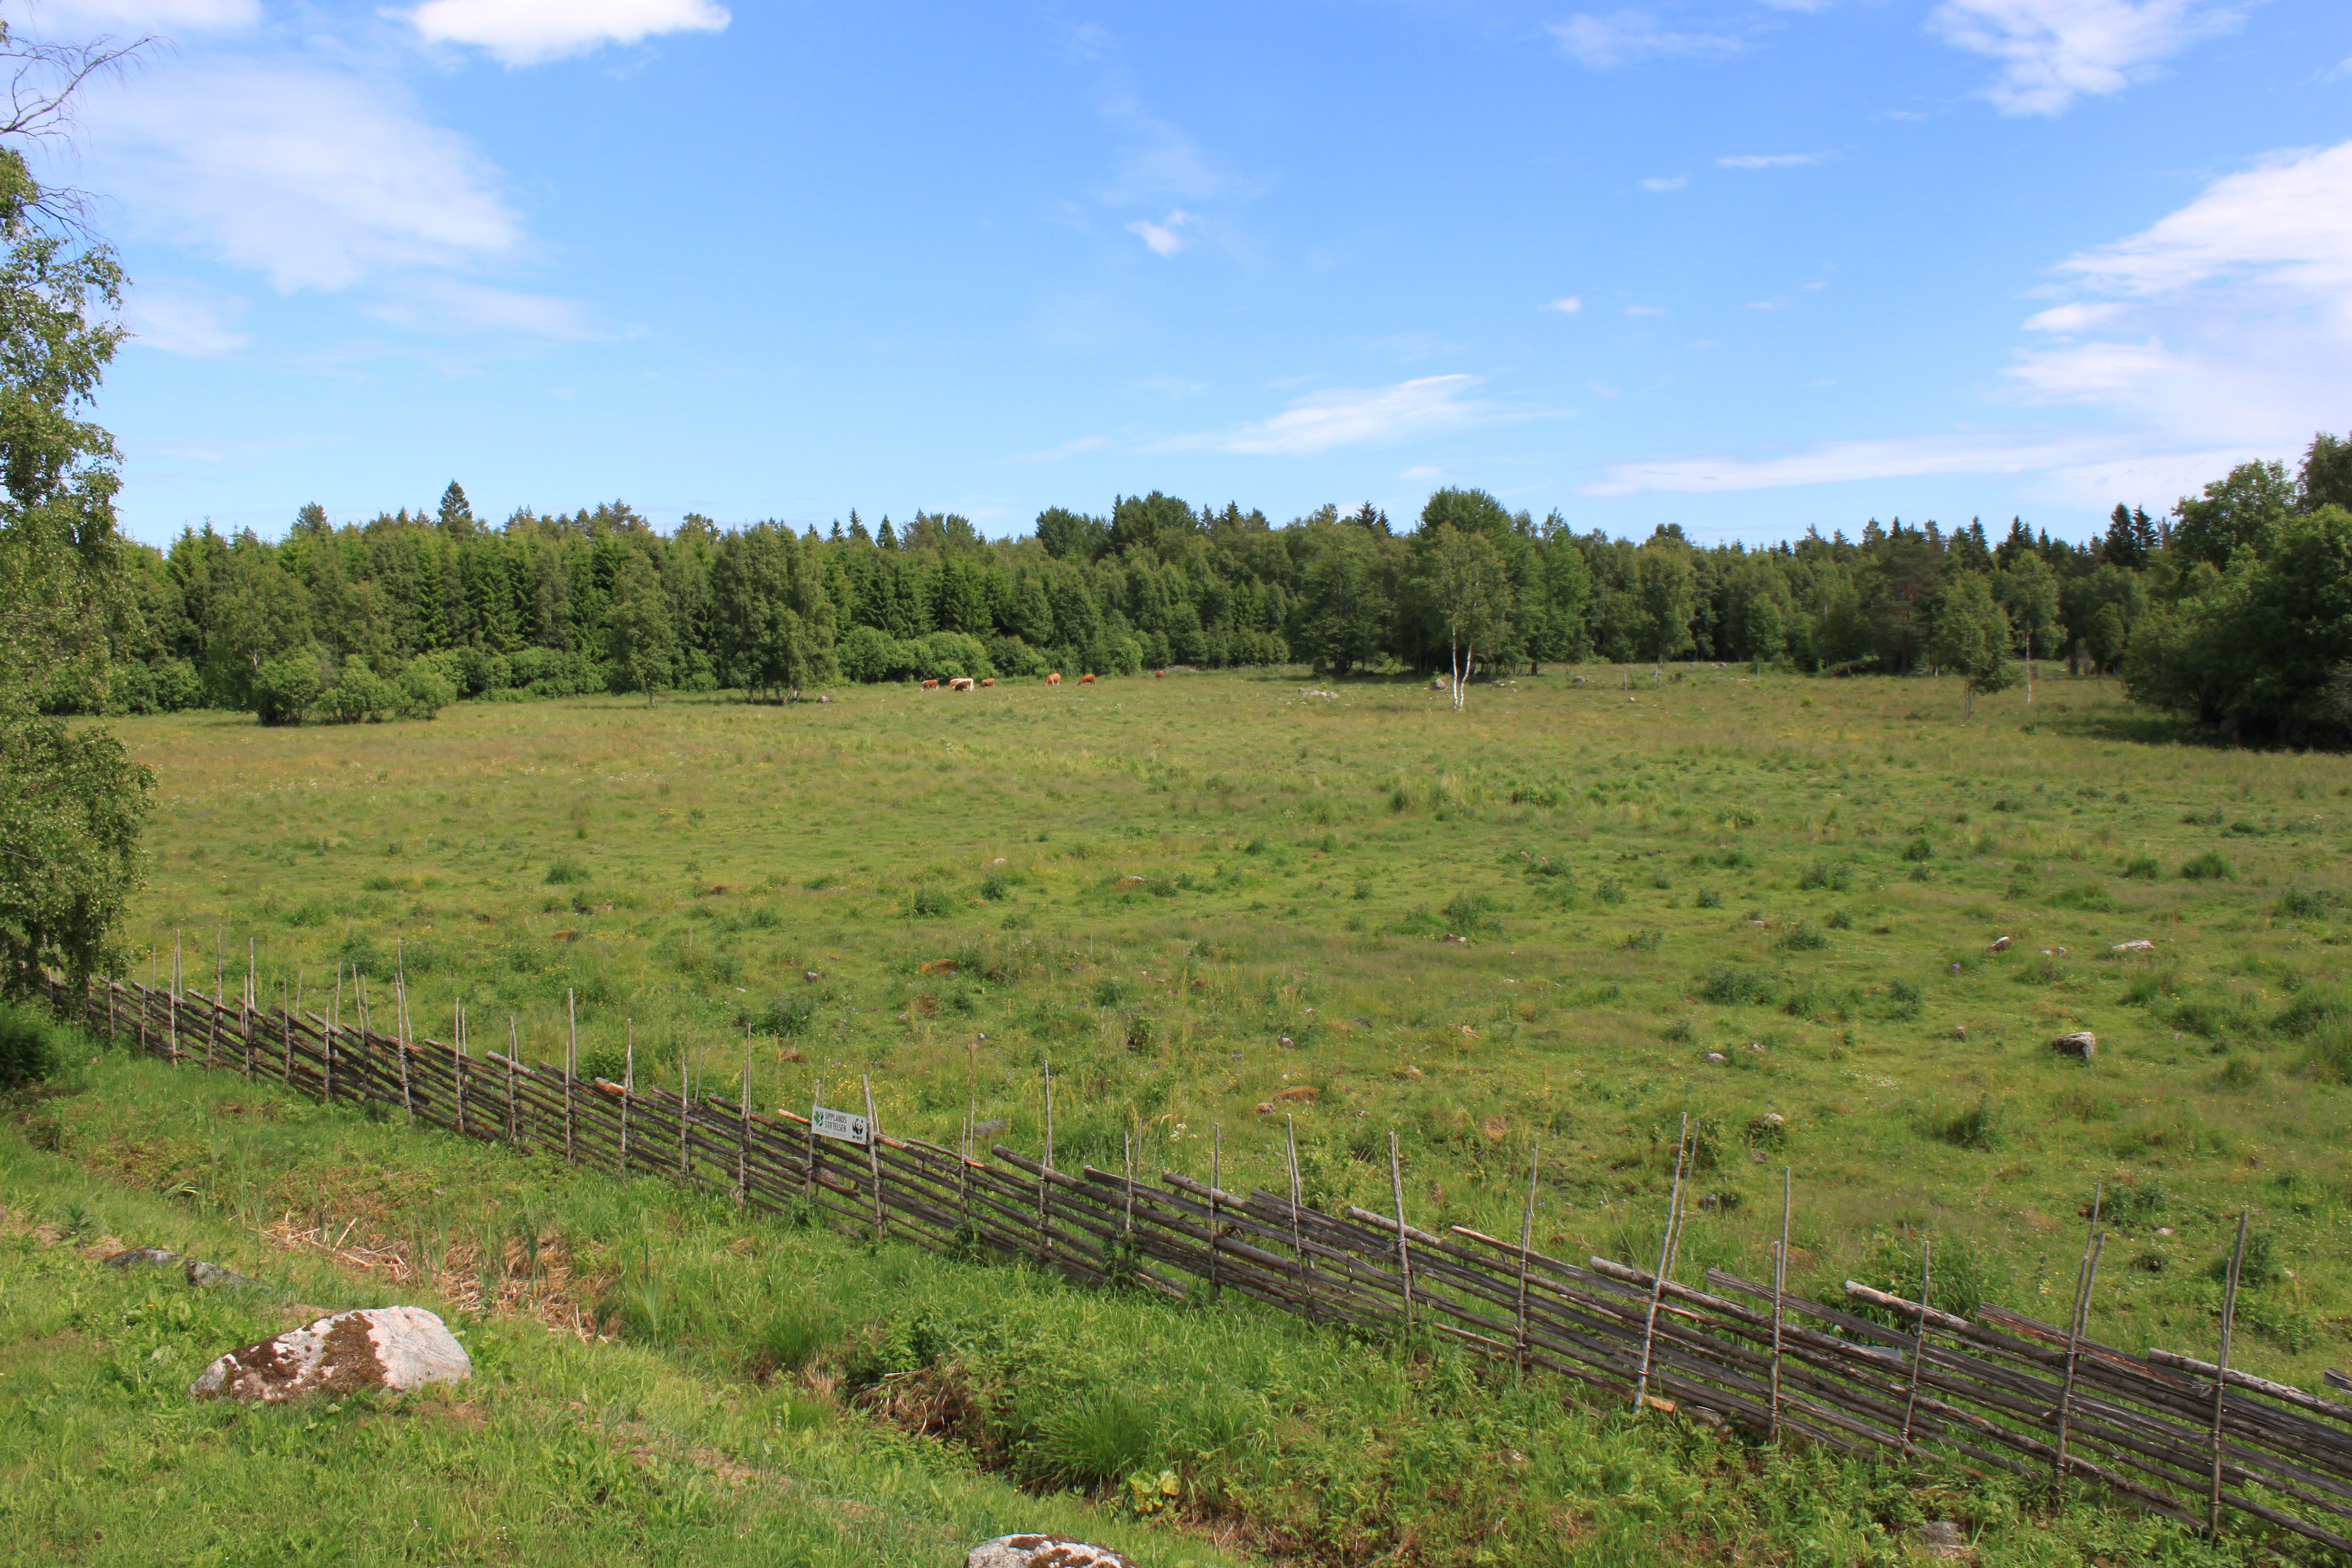 I en stor gräshage är omgiven av en gärdesgård går en flock kor.